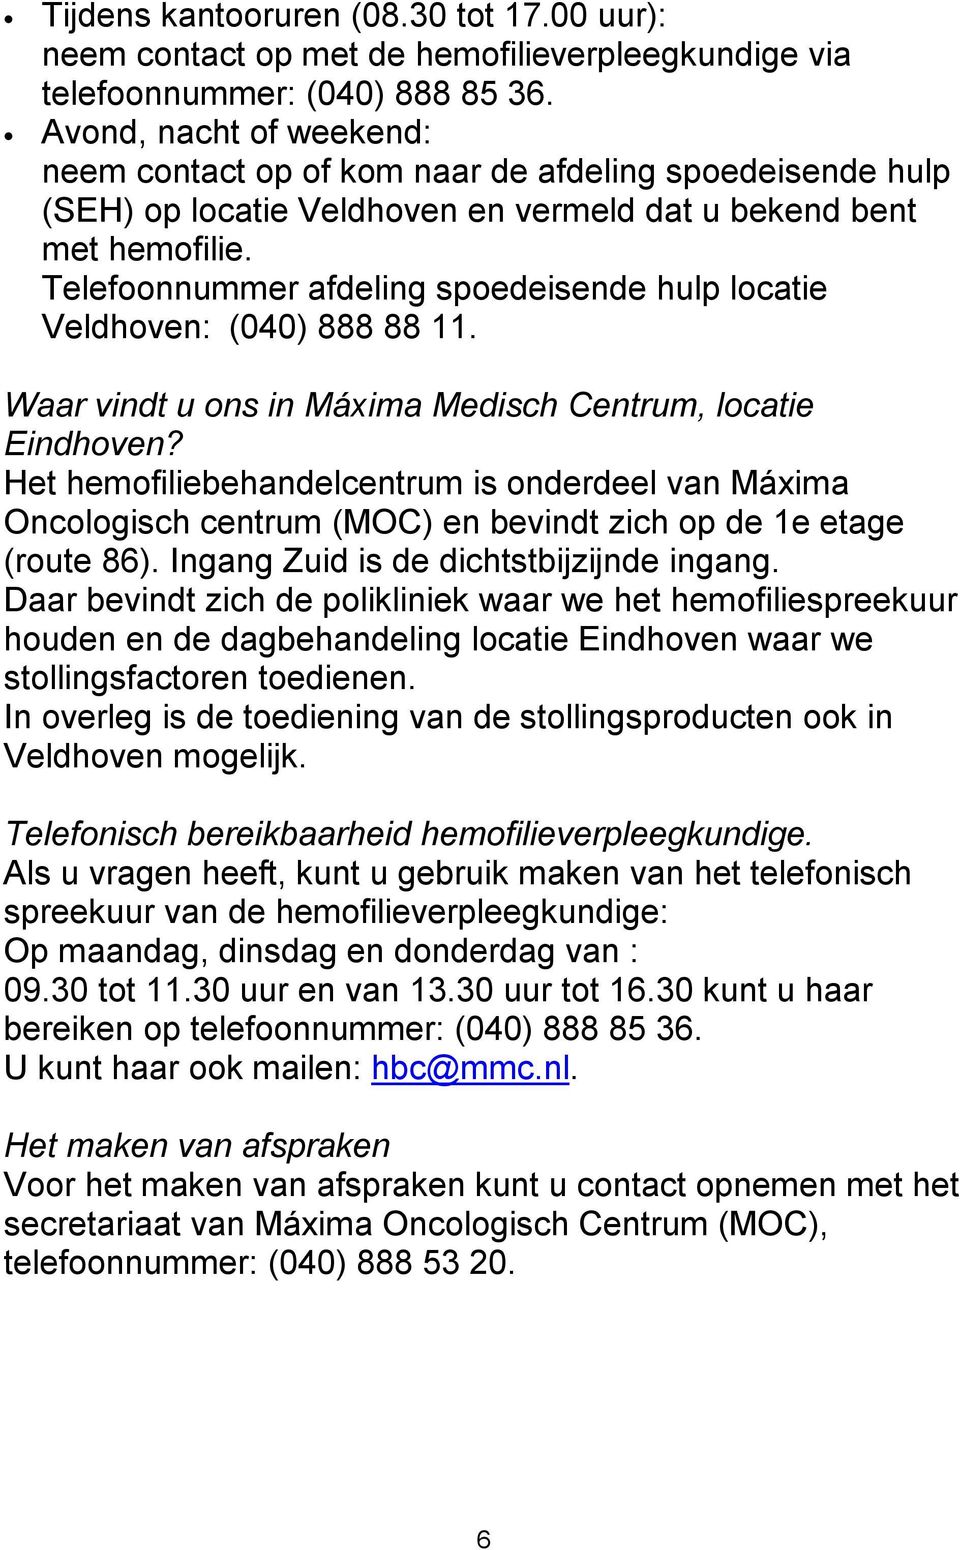 Telefoonnummer afdeling spoedeisende hulp locatie Veldhoven: (040) 888 88 11. Waar vindt u ons in Máxima Medisch Centrum, locatie Eindhoven?